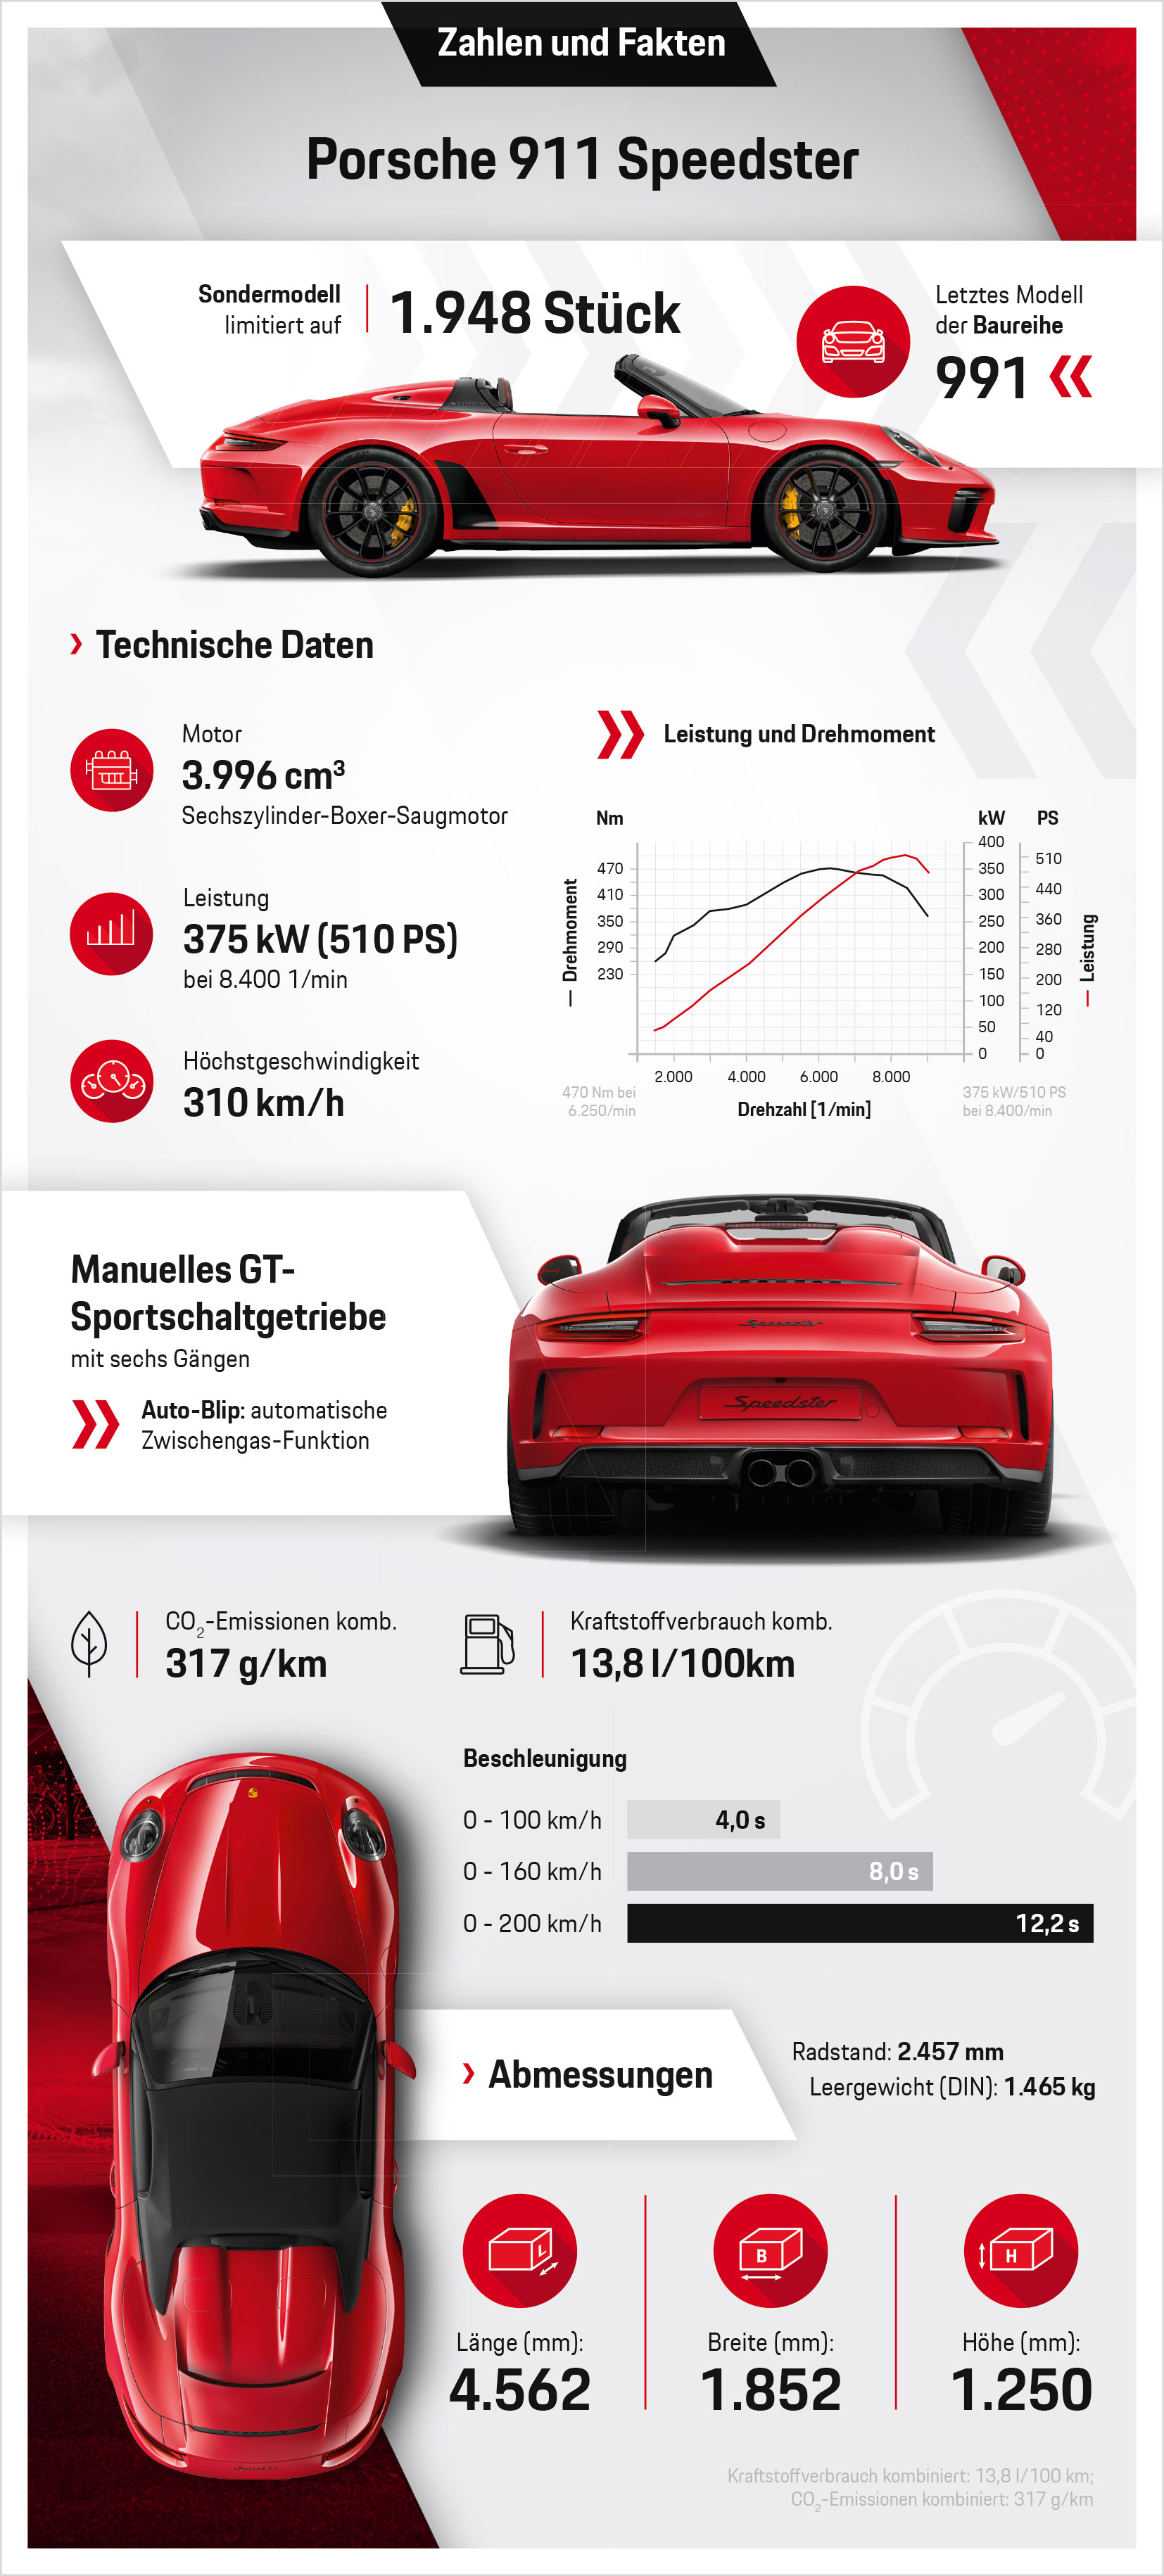 Porsche 911 Speedster, Infografik, 2019, Porsche AG